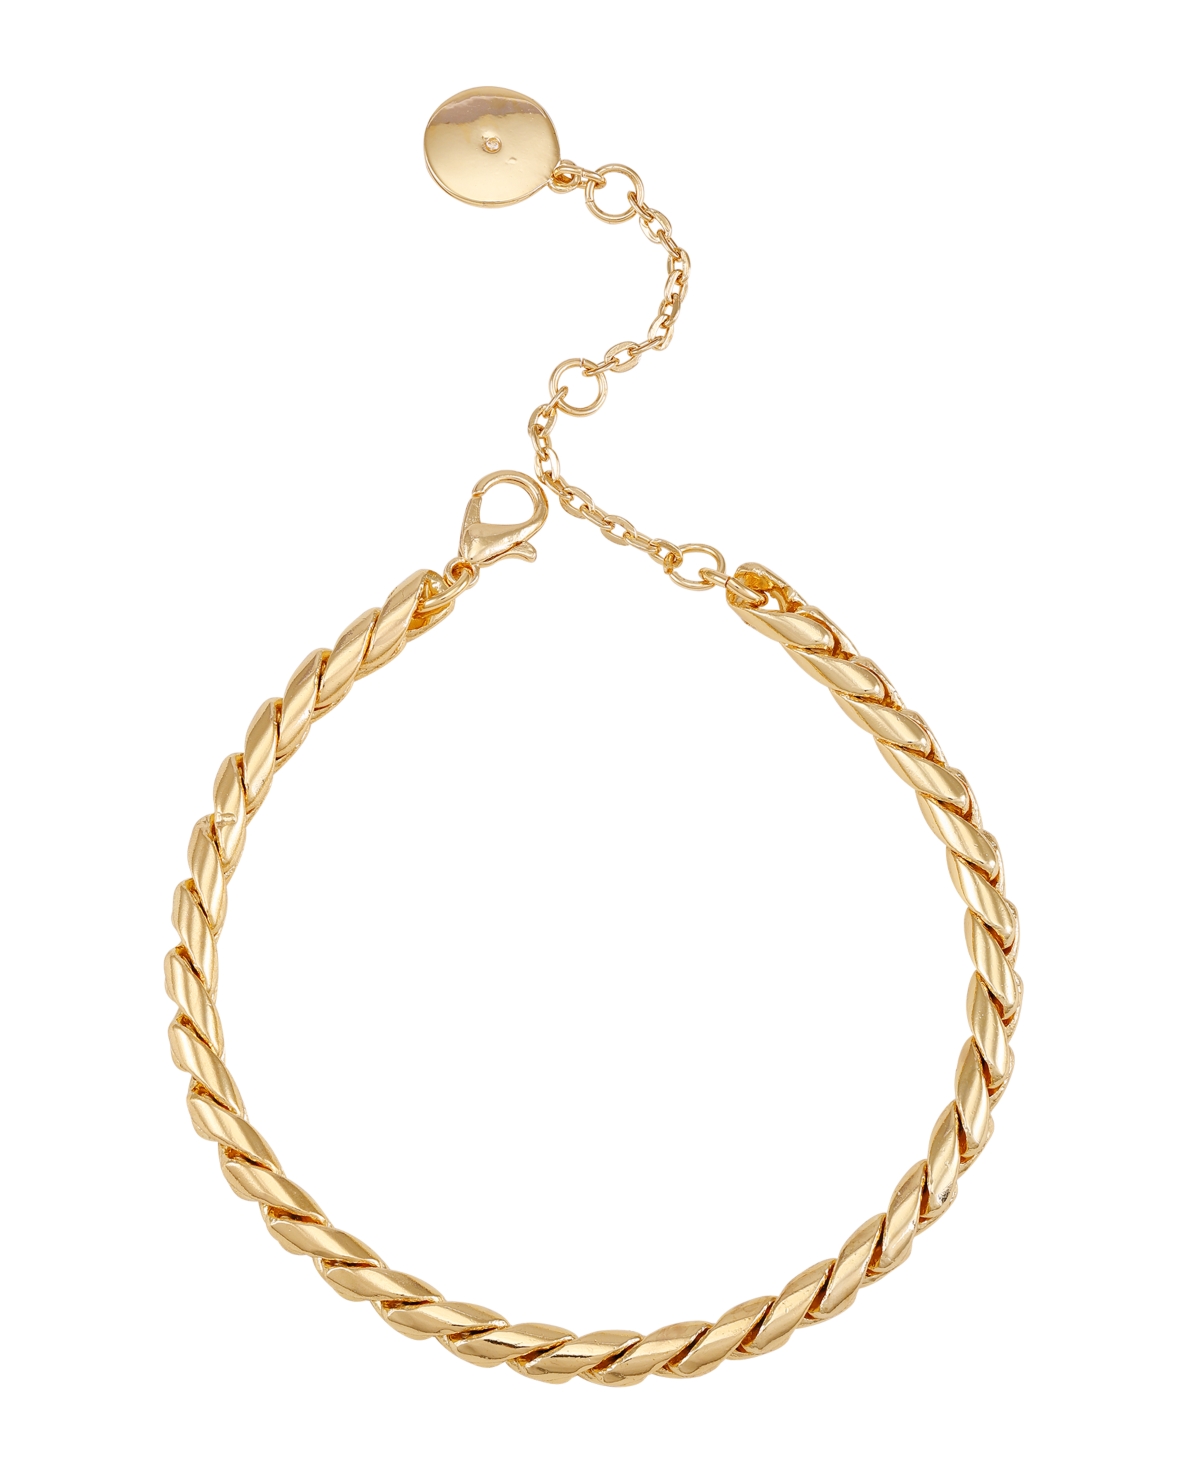 Shop Vince Camuto Gold-tone Chain Link Bracelet, 7.5"